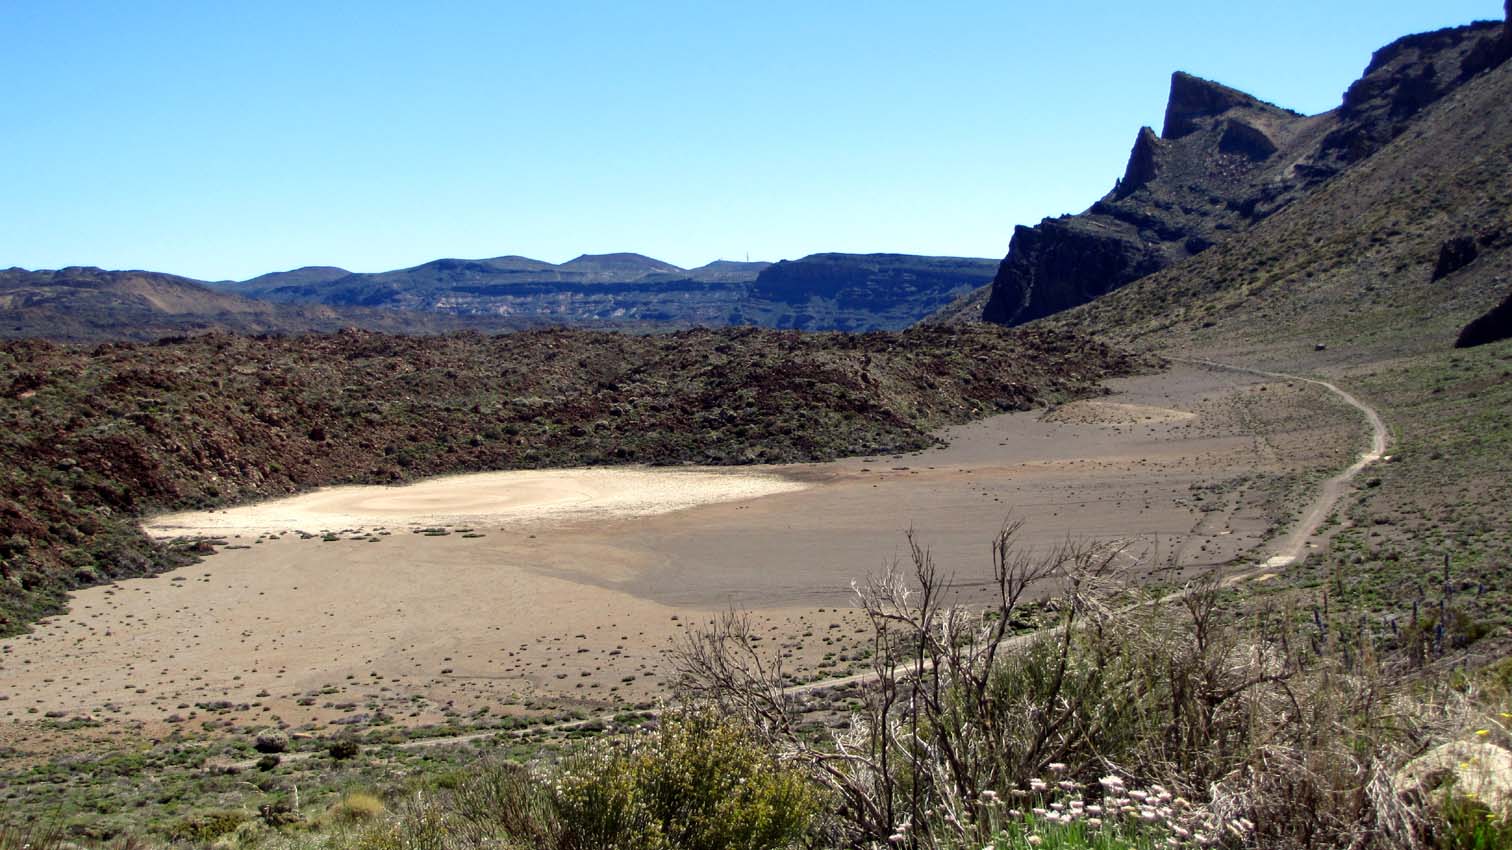 La "Hoya del Monton de Trigo", une cuvette sableuse qui est actuellement à sec...